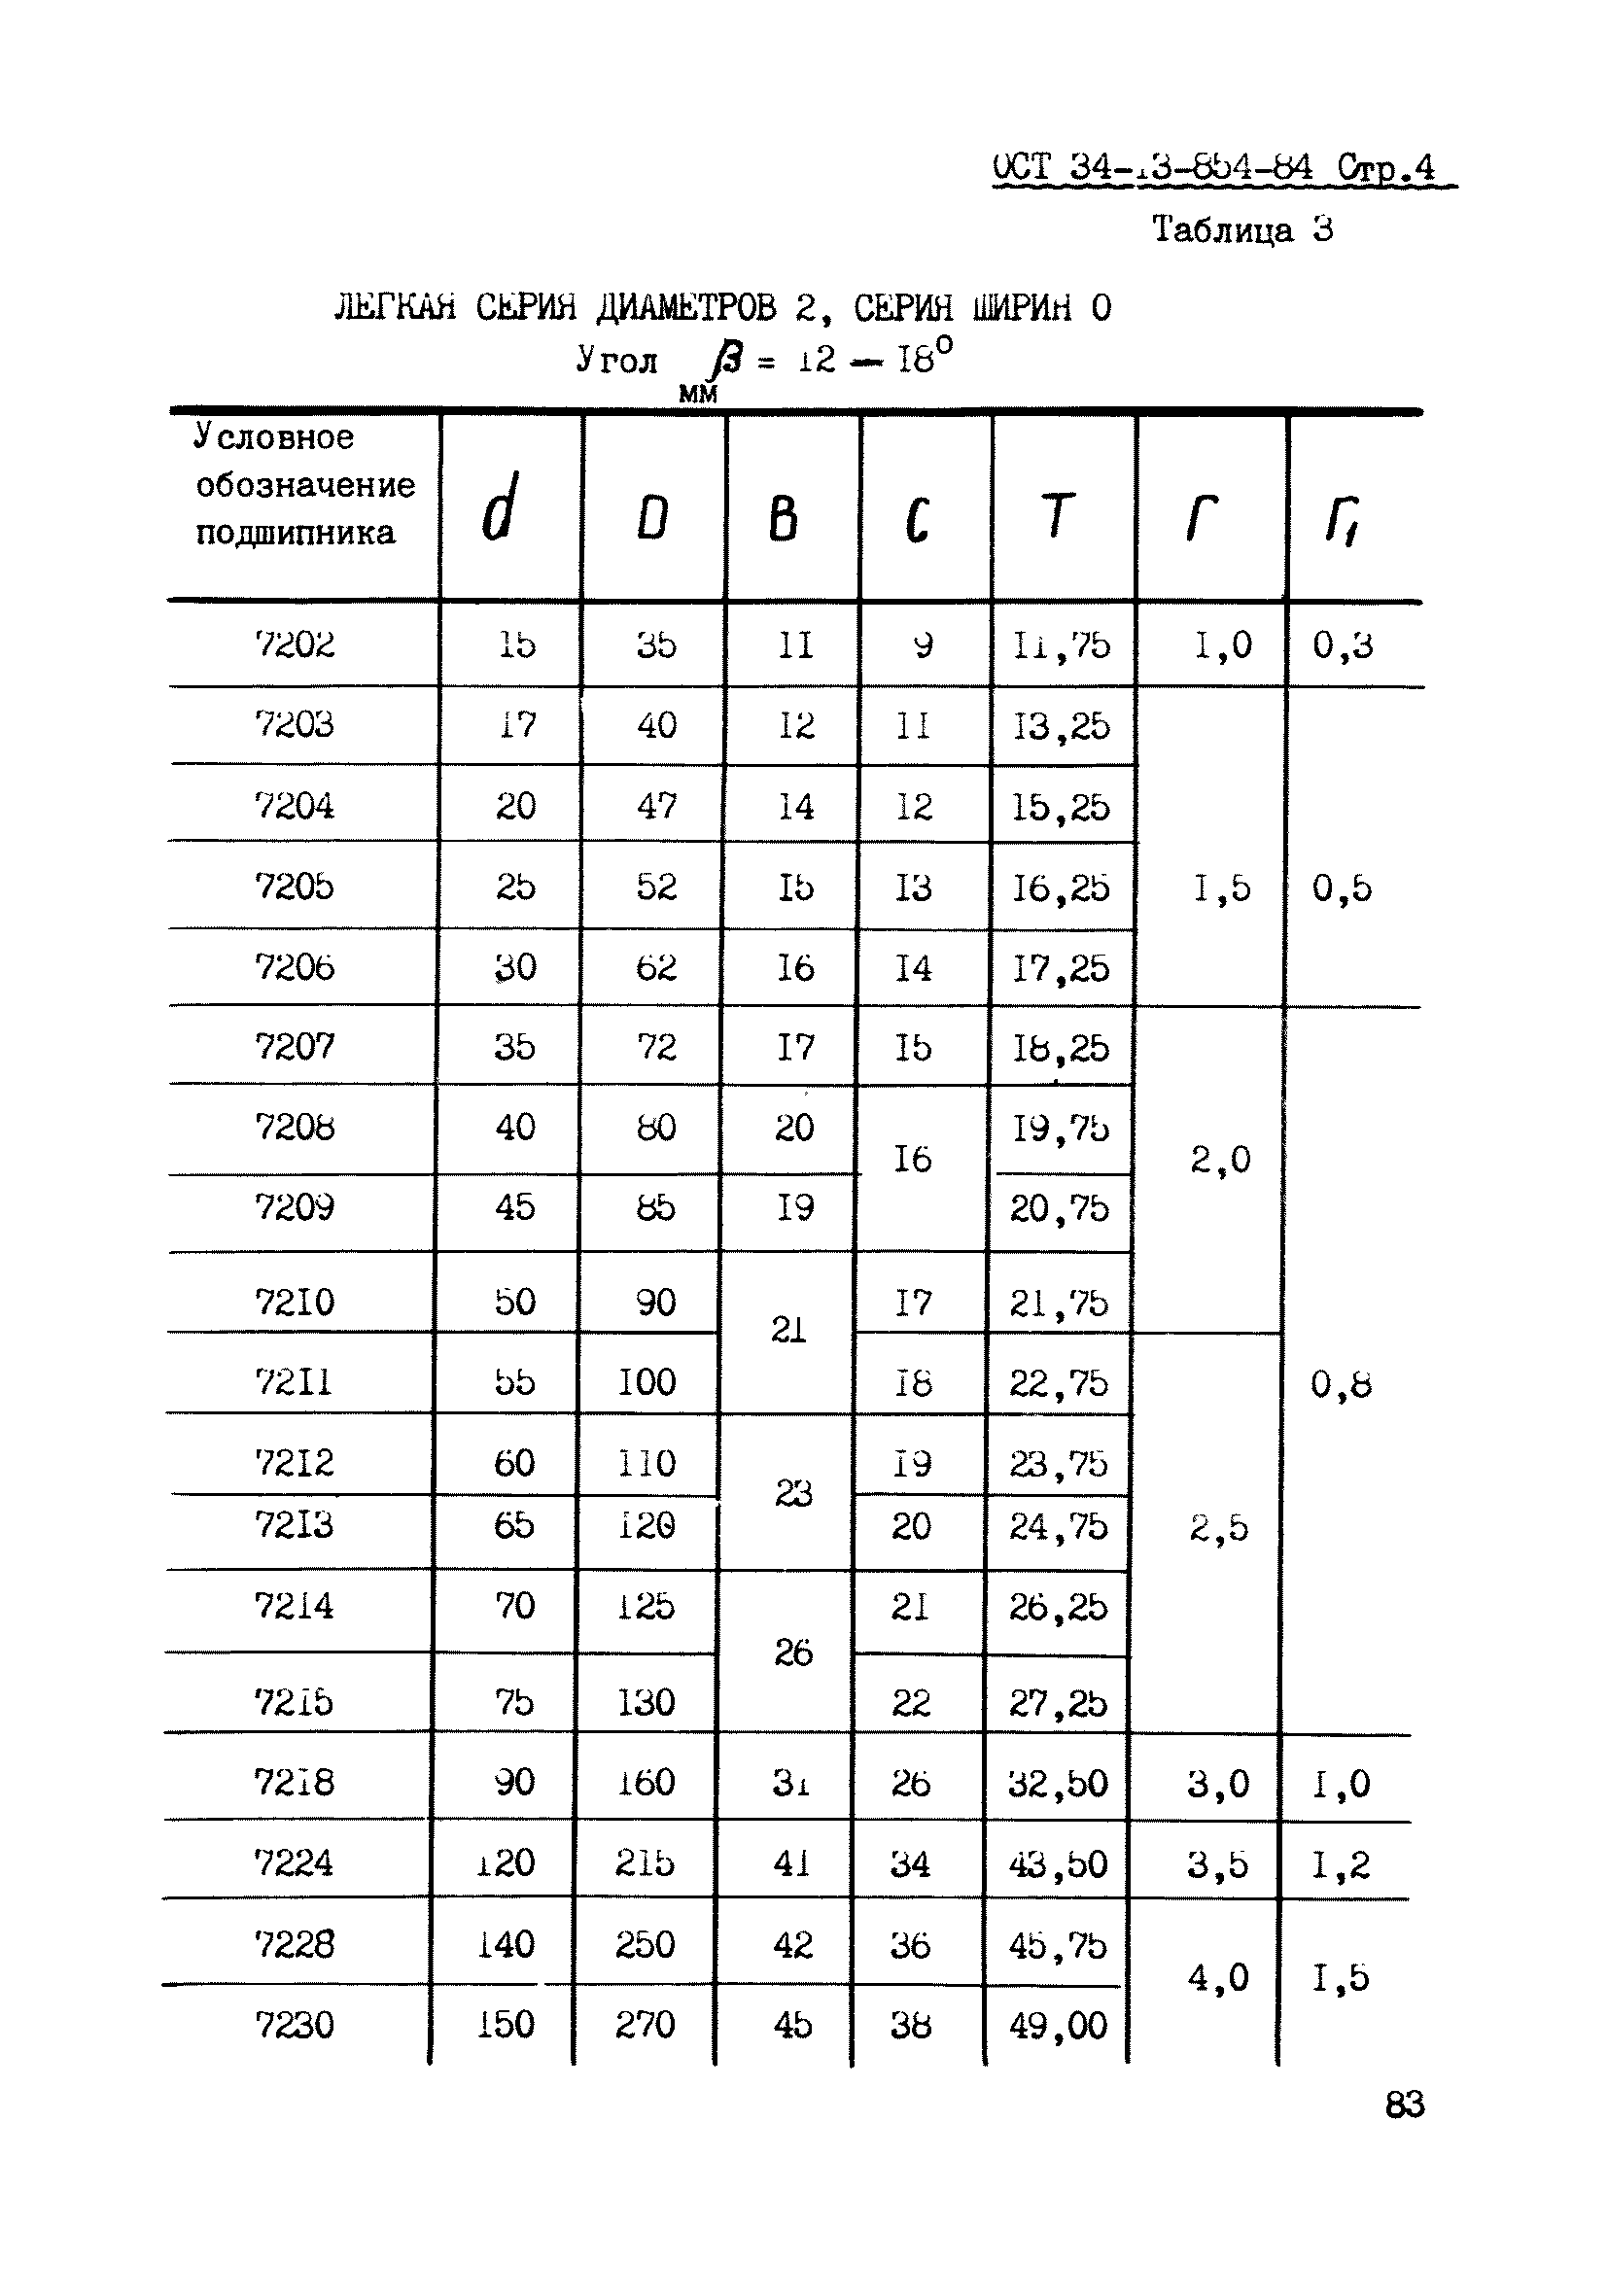 ОСТ 34-13-854-84